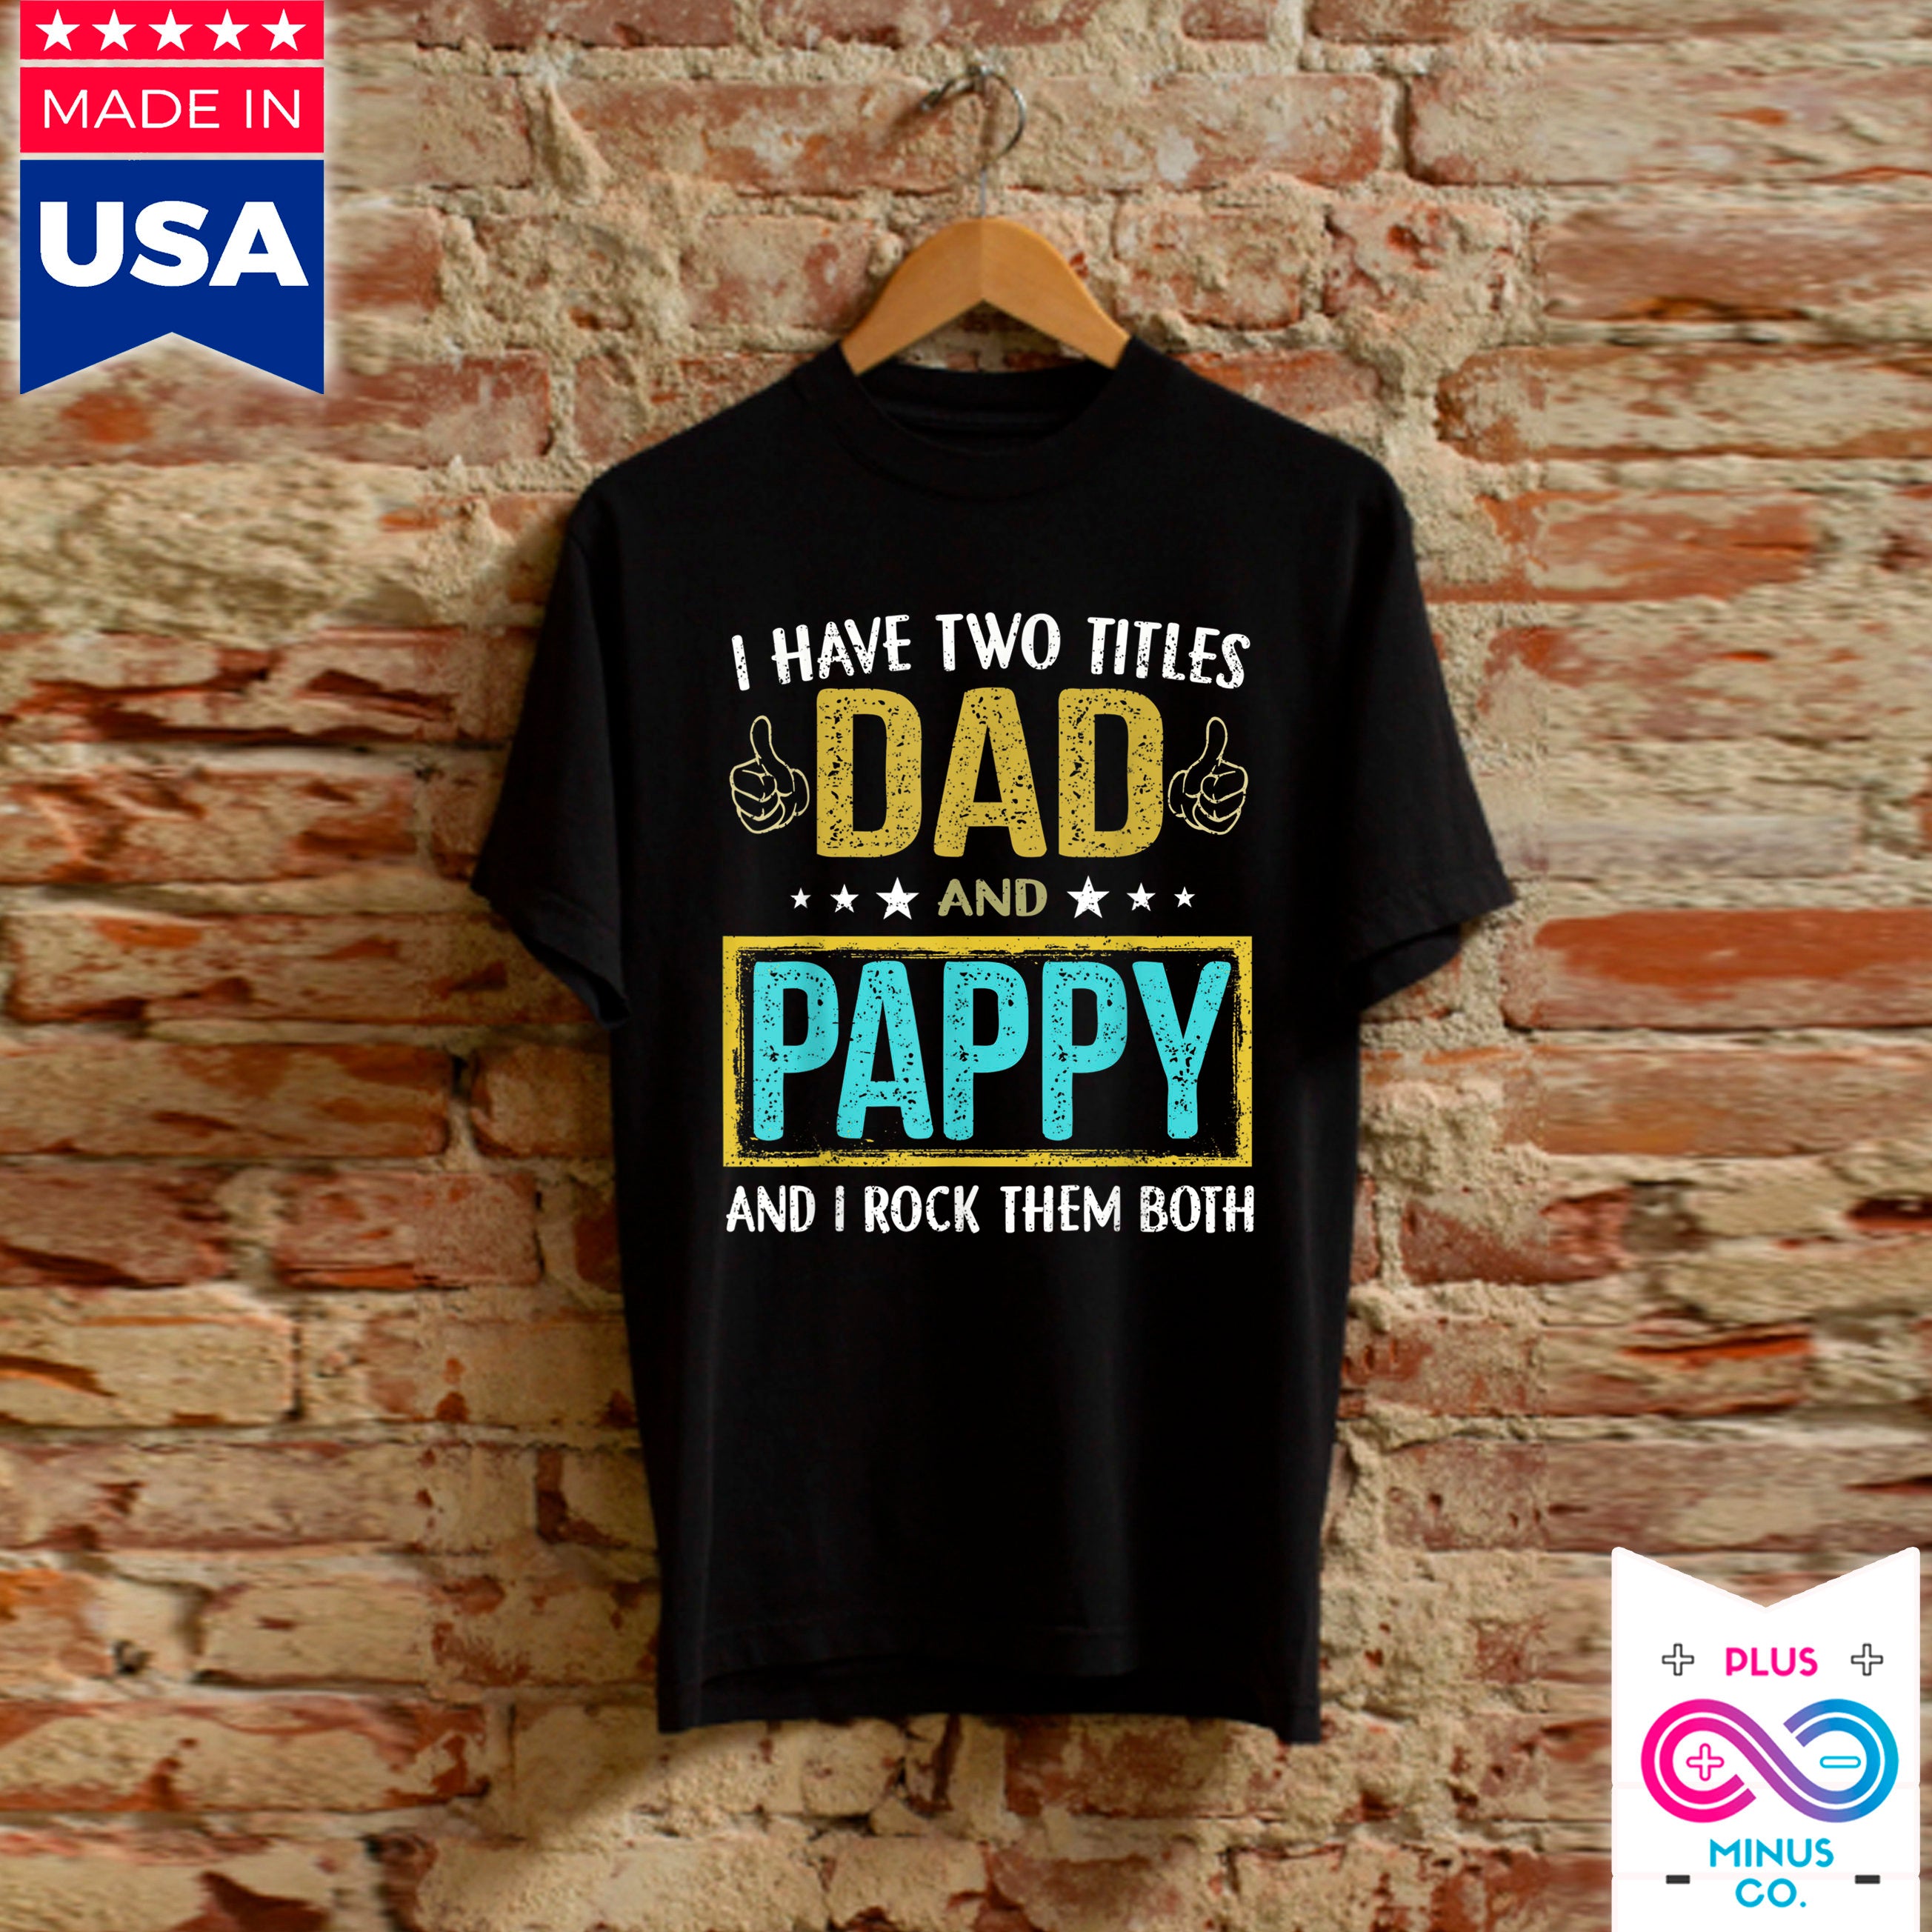 Män Jag har två titlar pappa och pappa - presenter till far T-shirts, presenter från dotter till pappa, fars dag present, presenter från son till pappa - plusminusco.com